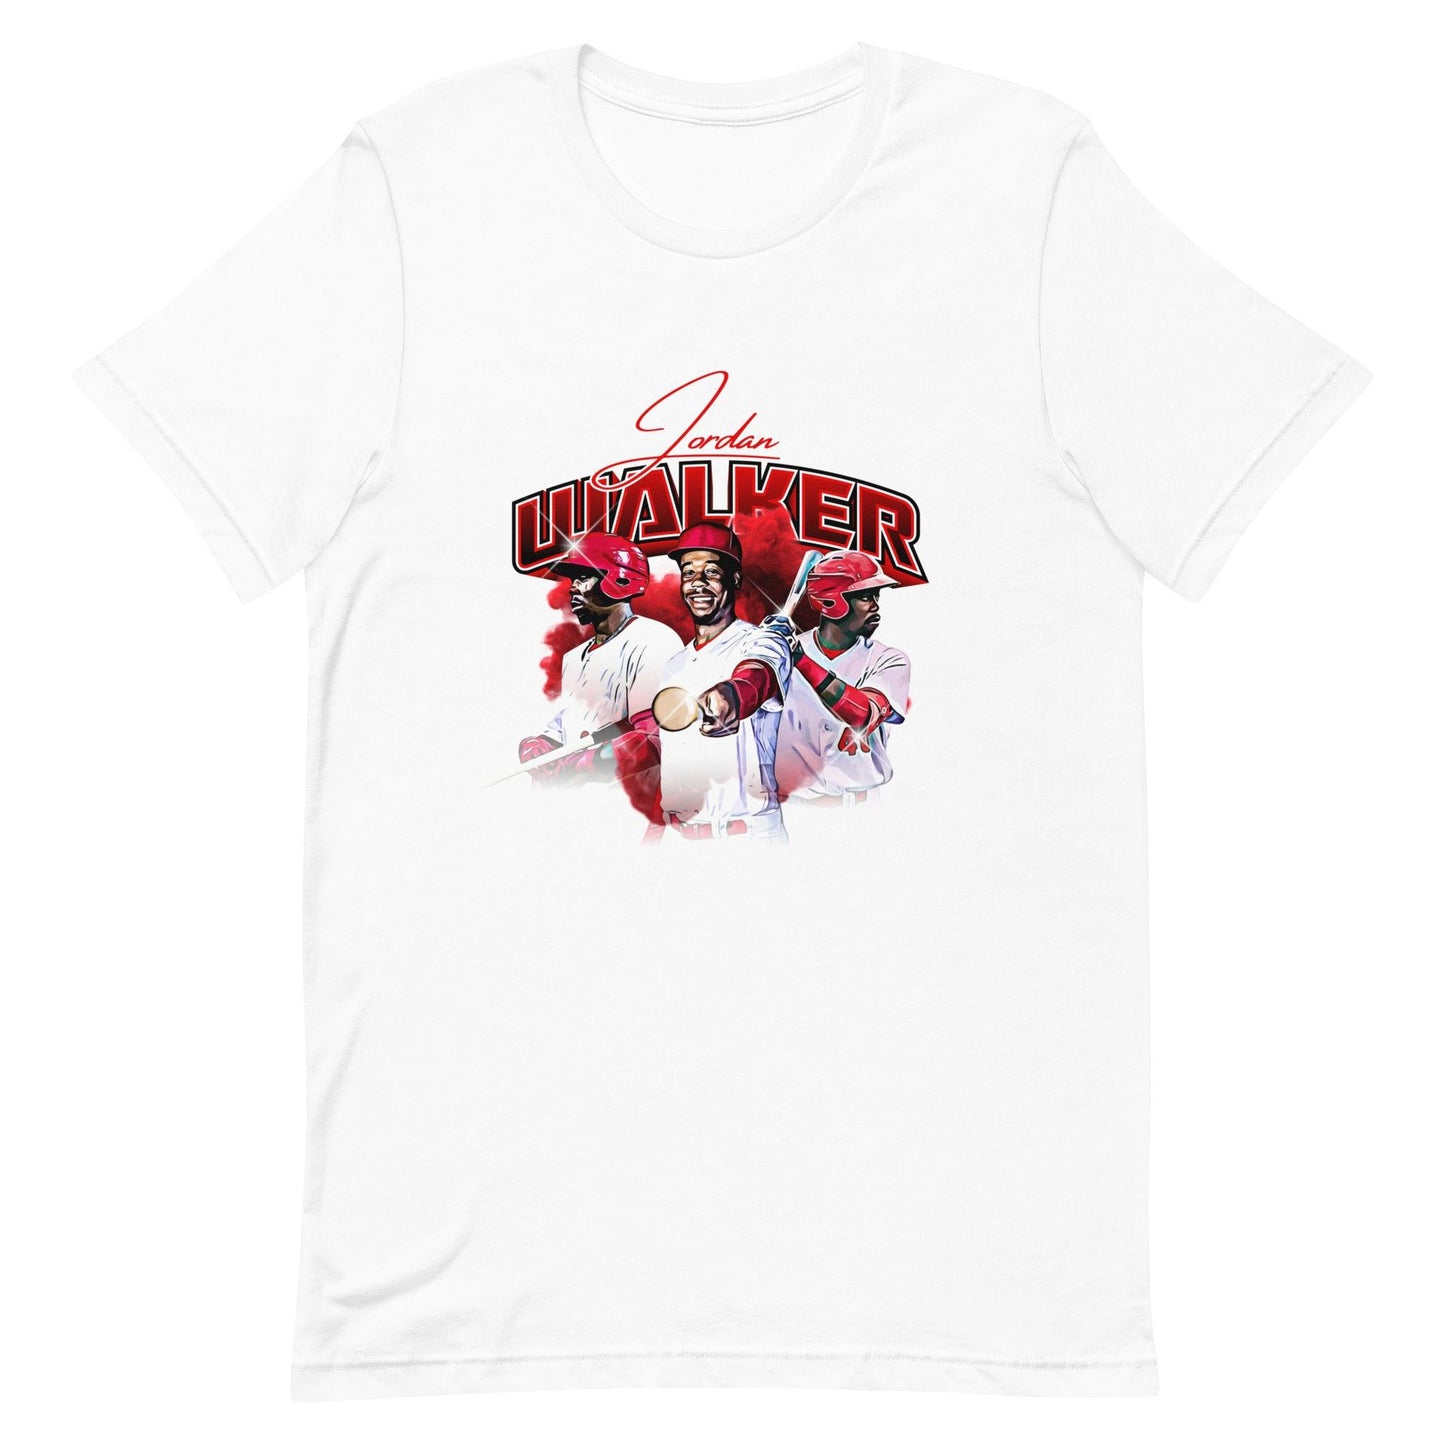 Jordan Walker “Essential” t-shirt - Fan Arch